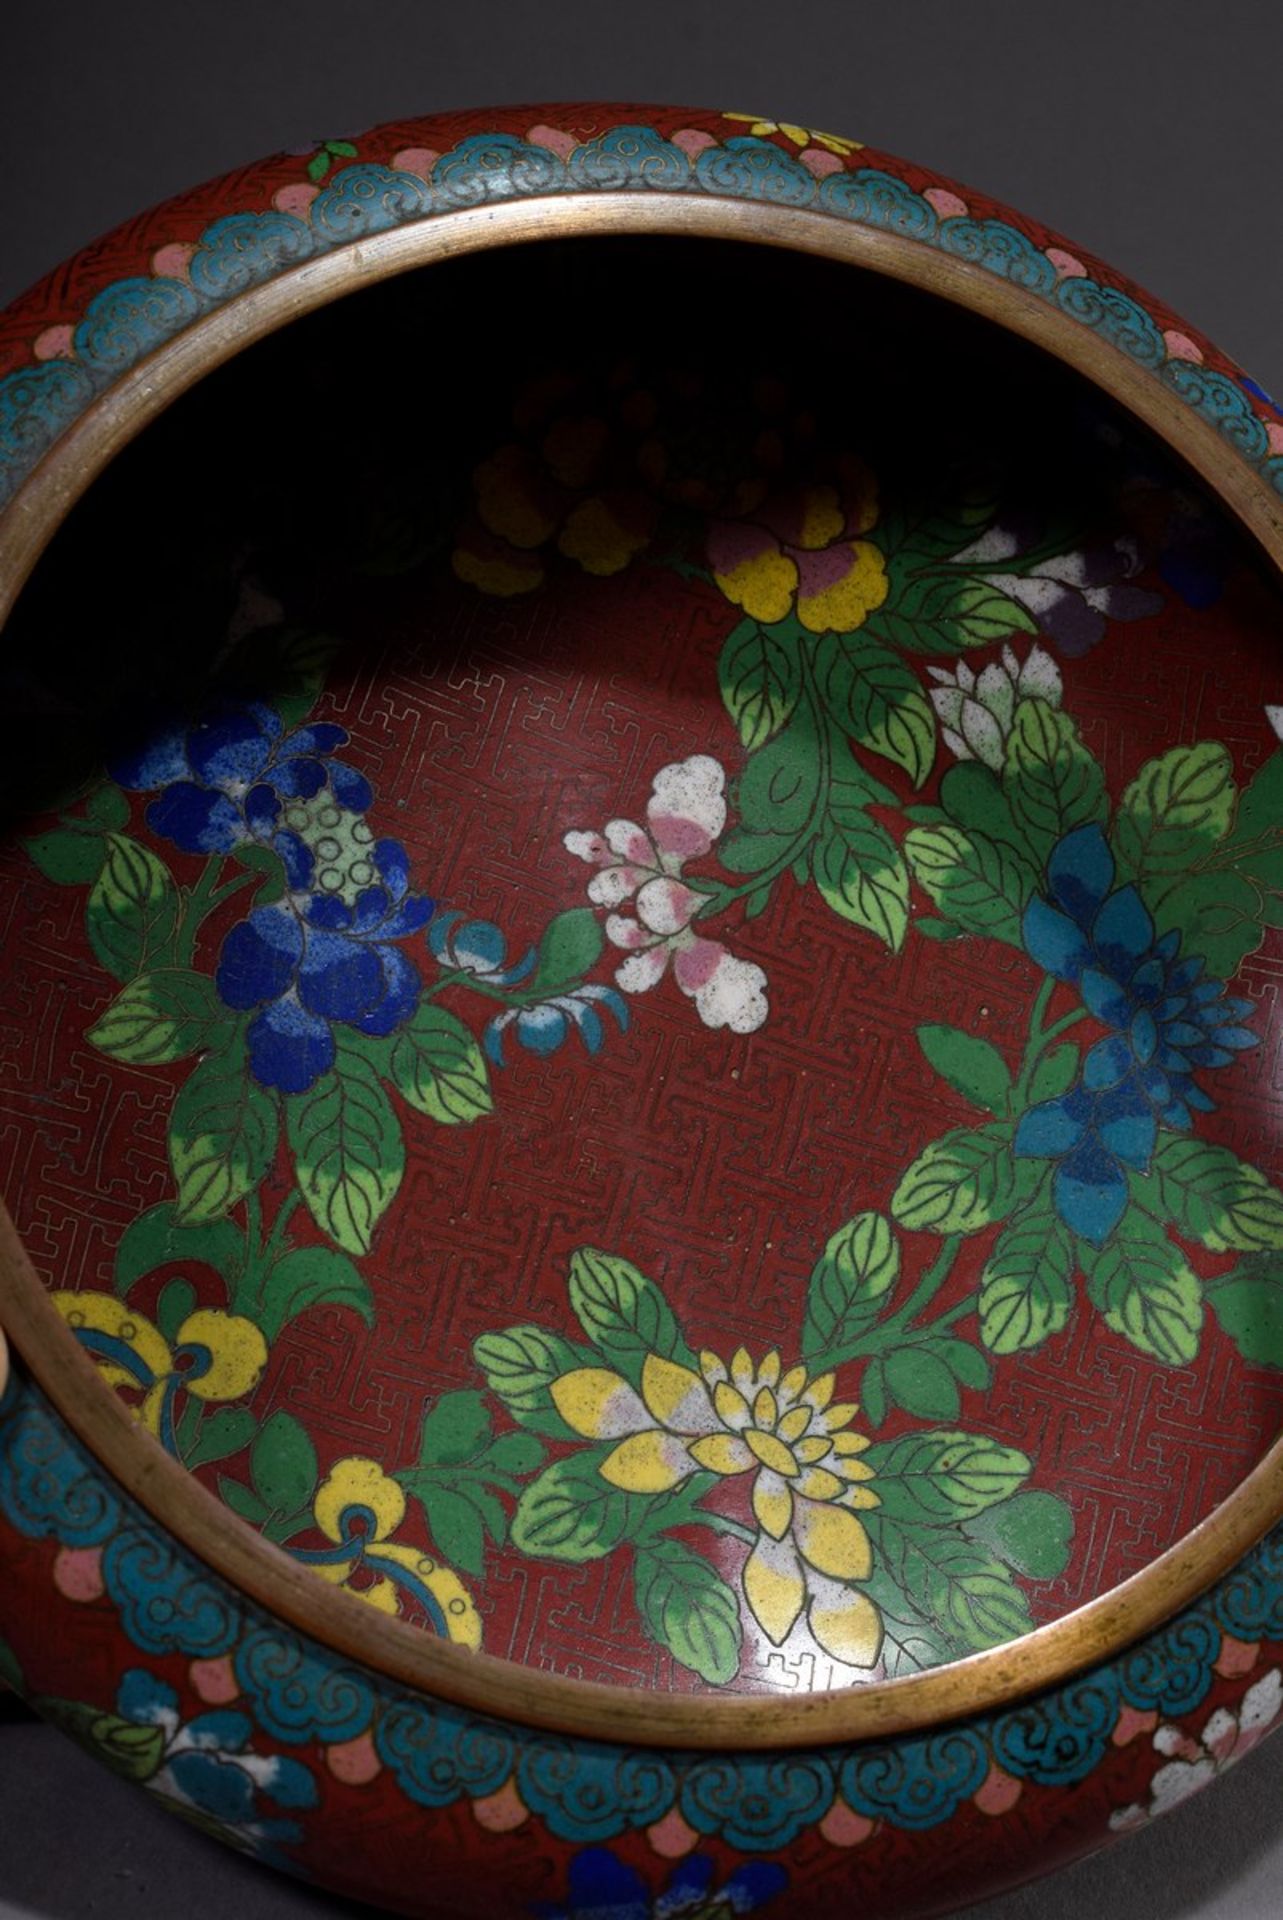 Chinesische Cloisonné Schale "Chrysanthemen" auf rotem Fond, verso Ming Vierzeichenmarke, Ø 25cm, H. - Image 3 of 5